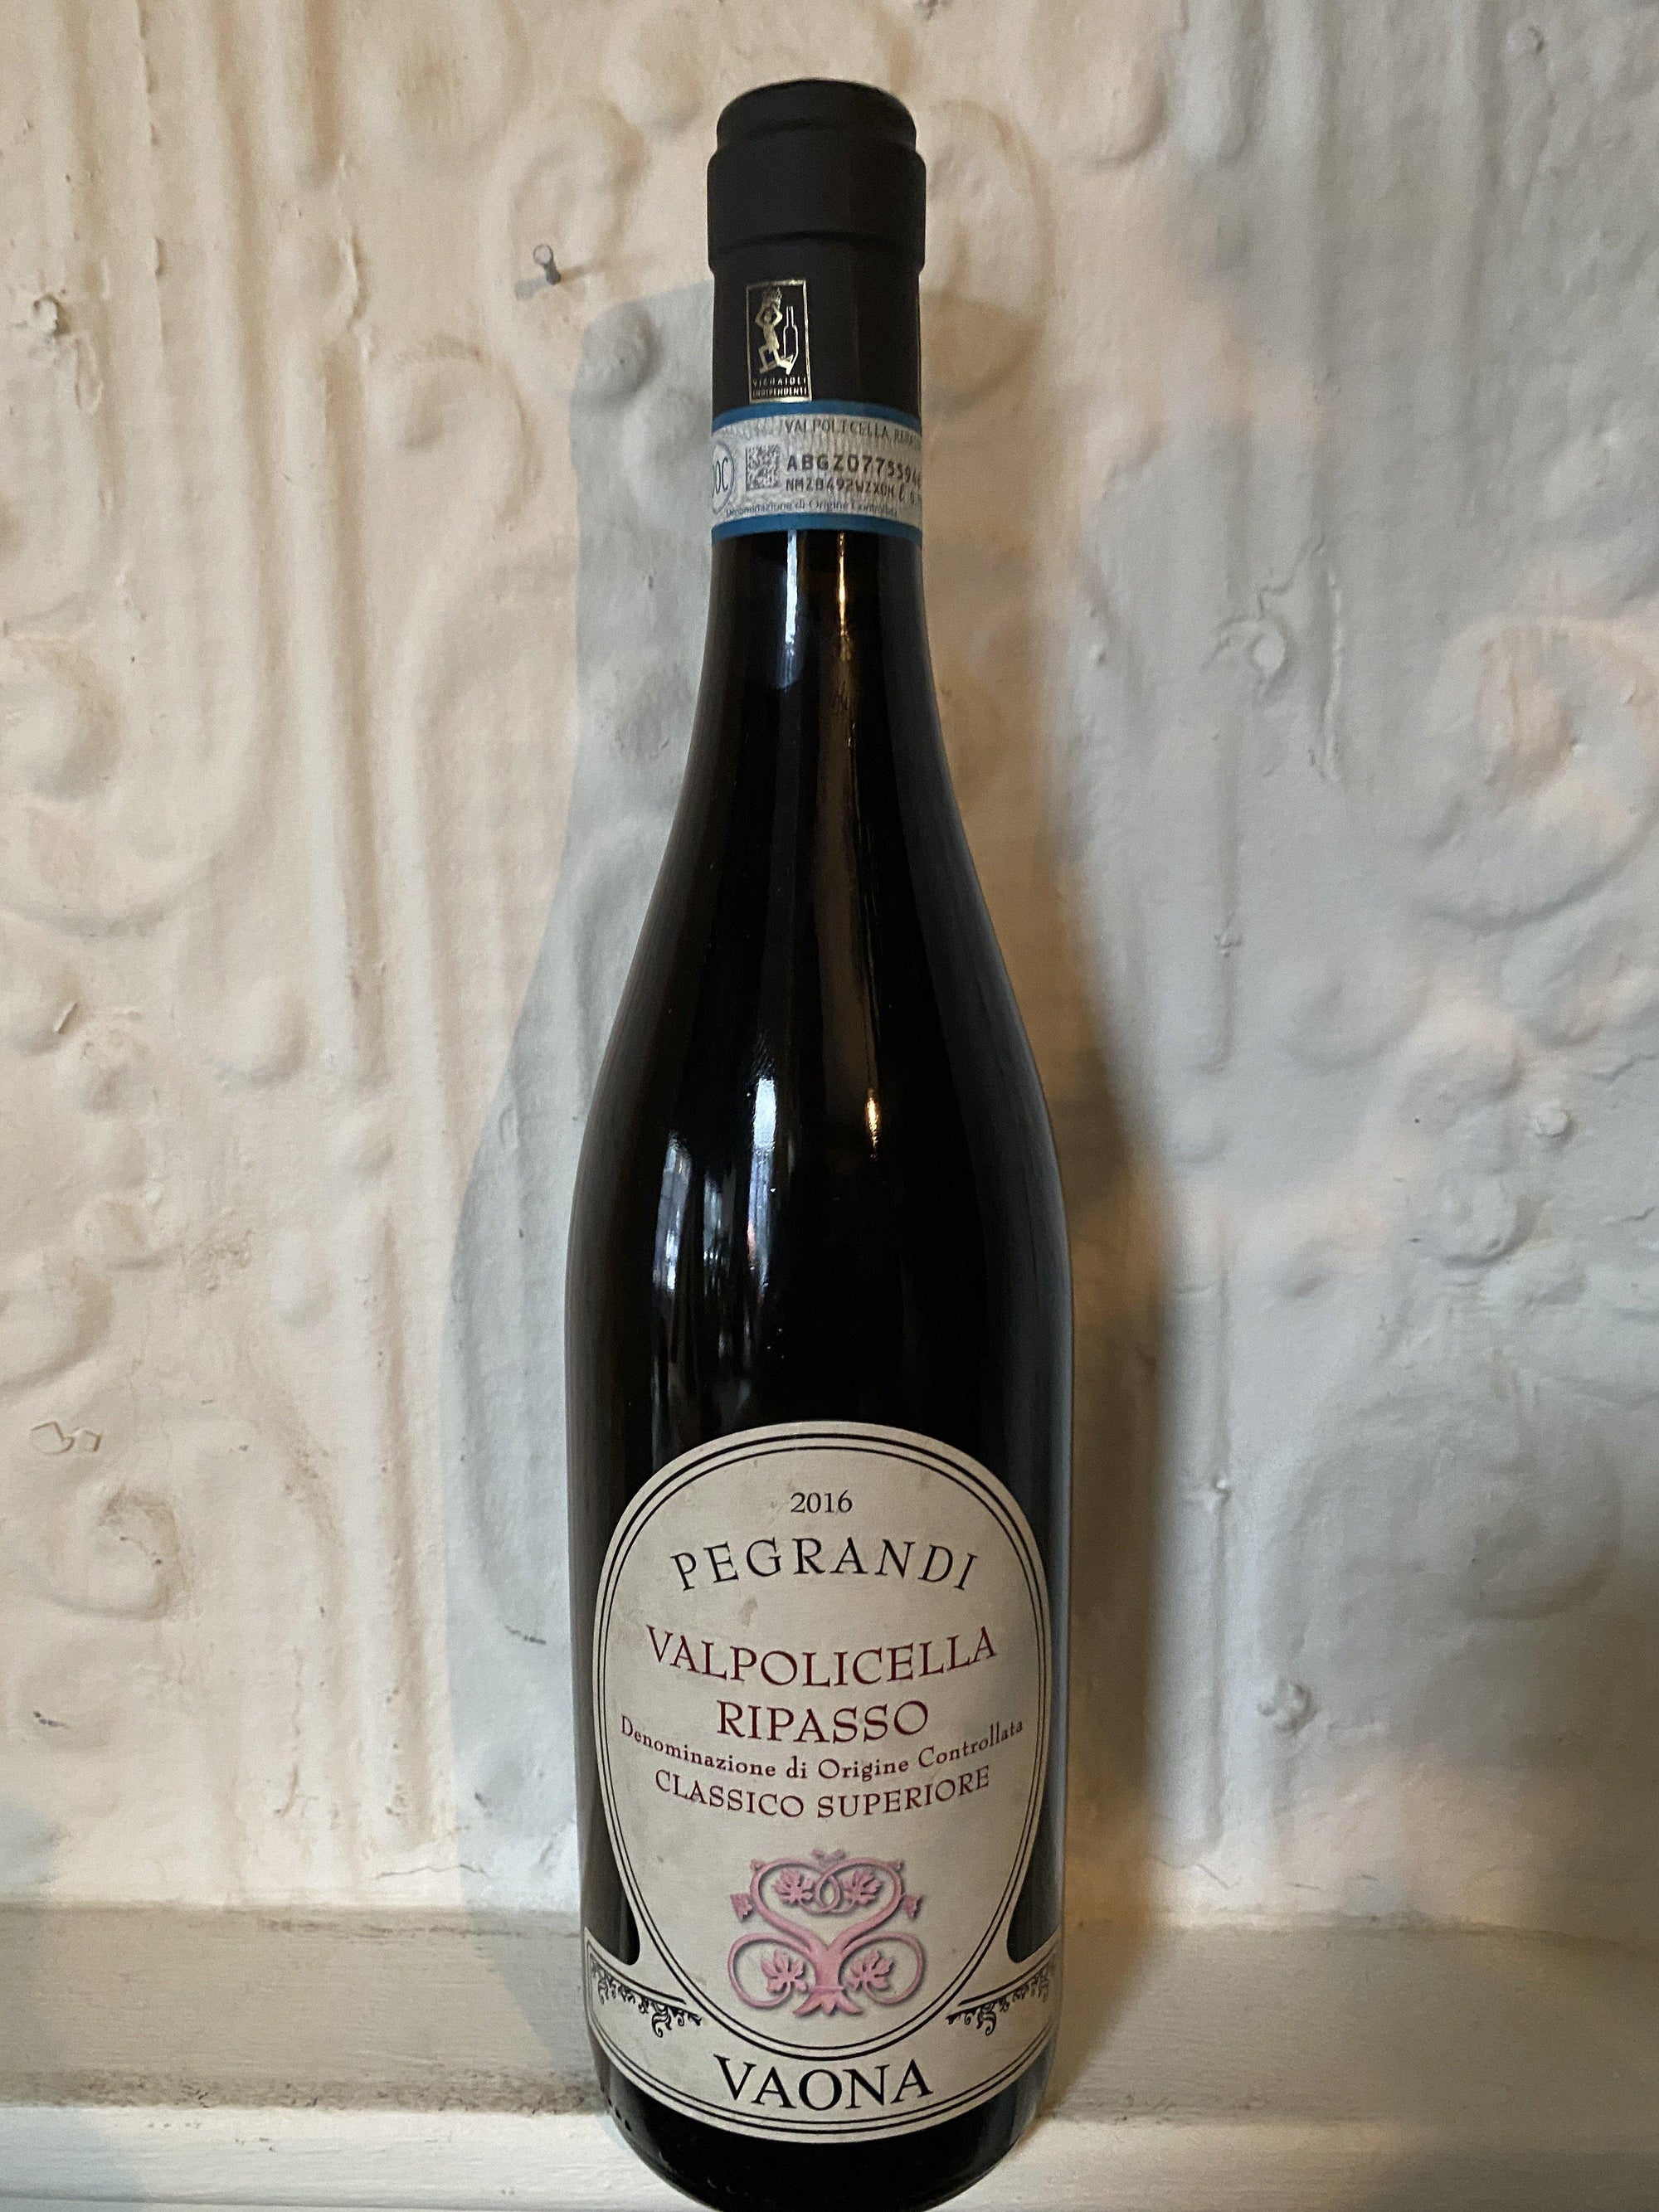 Valpolicella Superiore Ripasso "Pegrandi", Vaona 2016 (Veneto, Italy)-Wine-Bibber & Bell